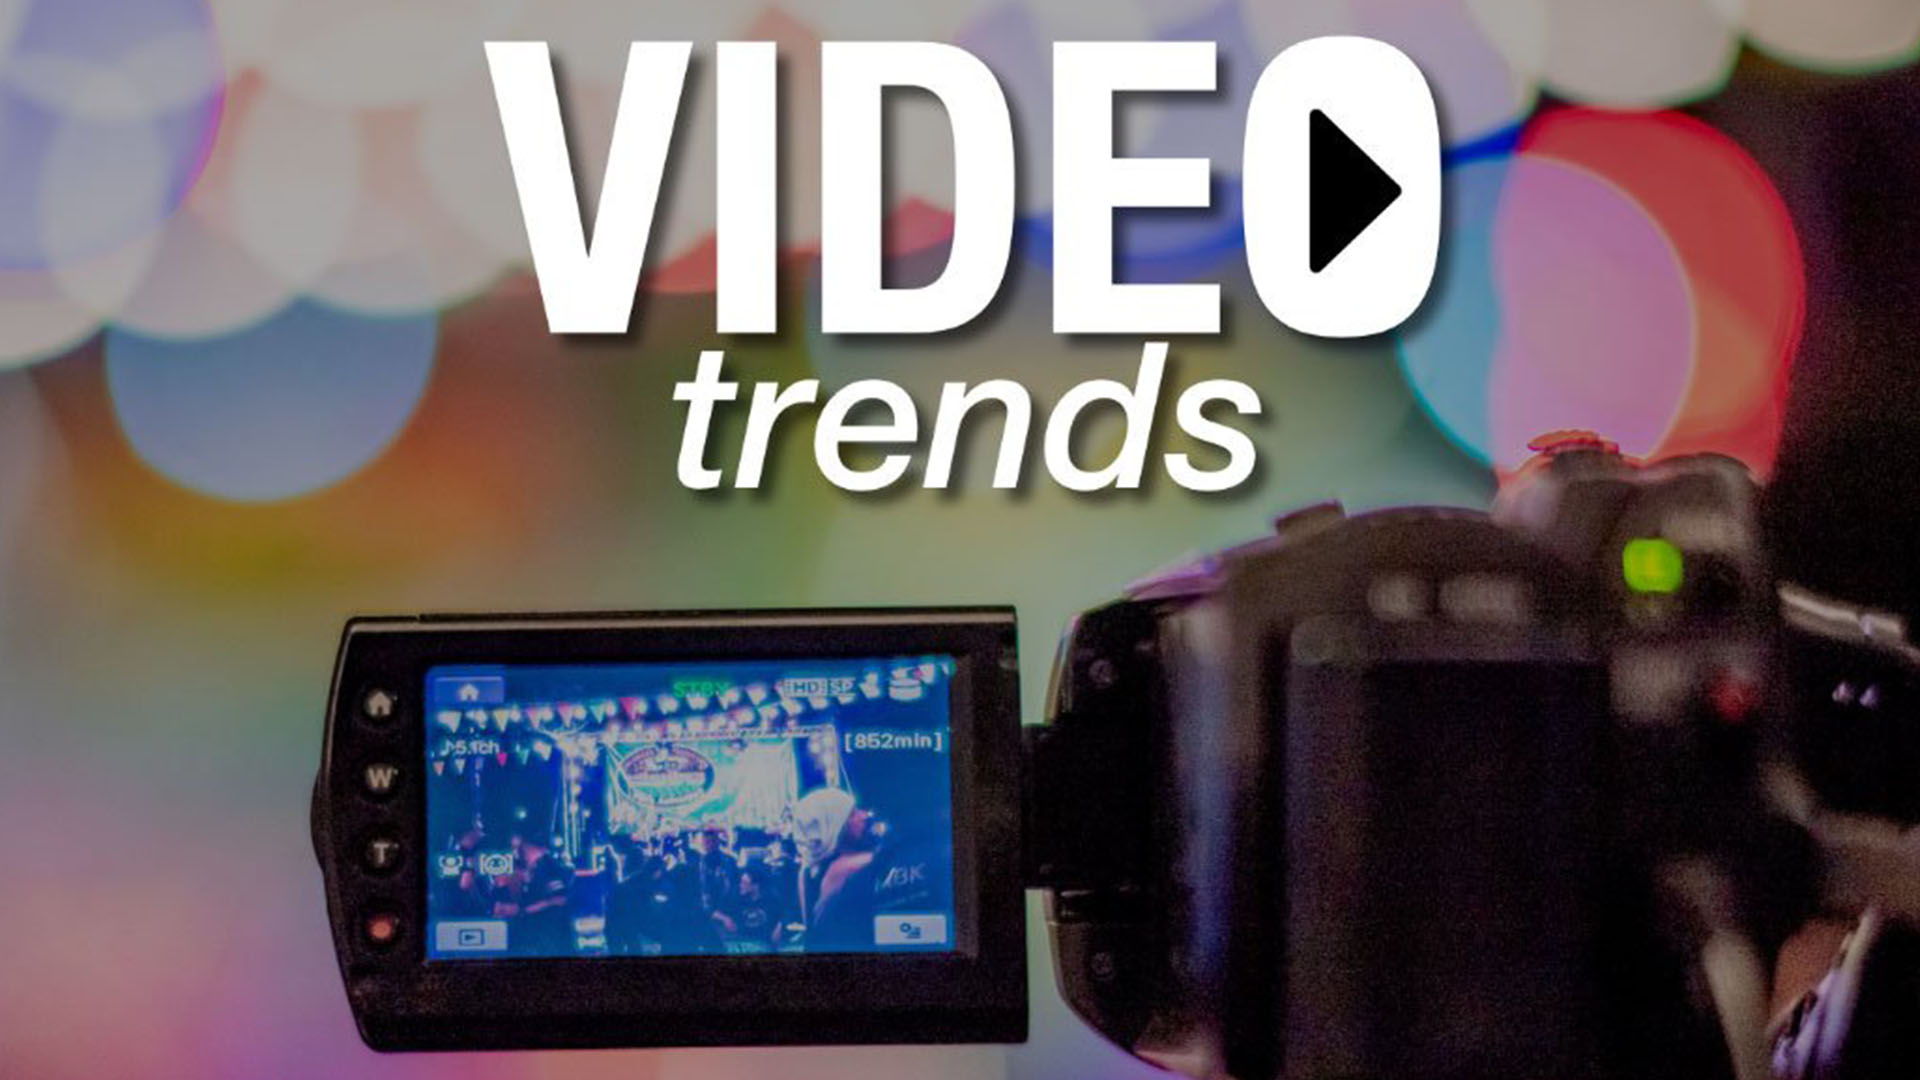 Video trends